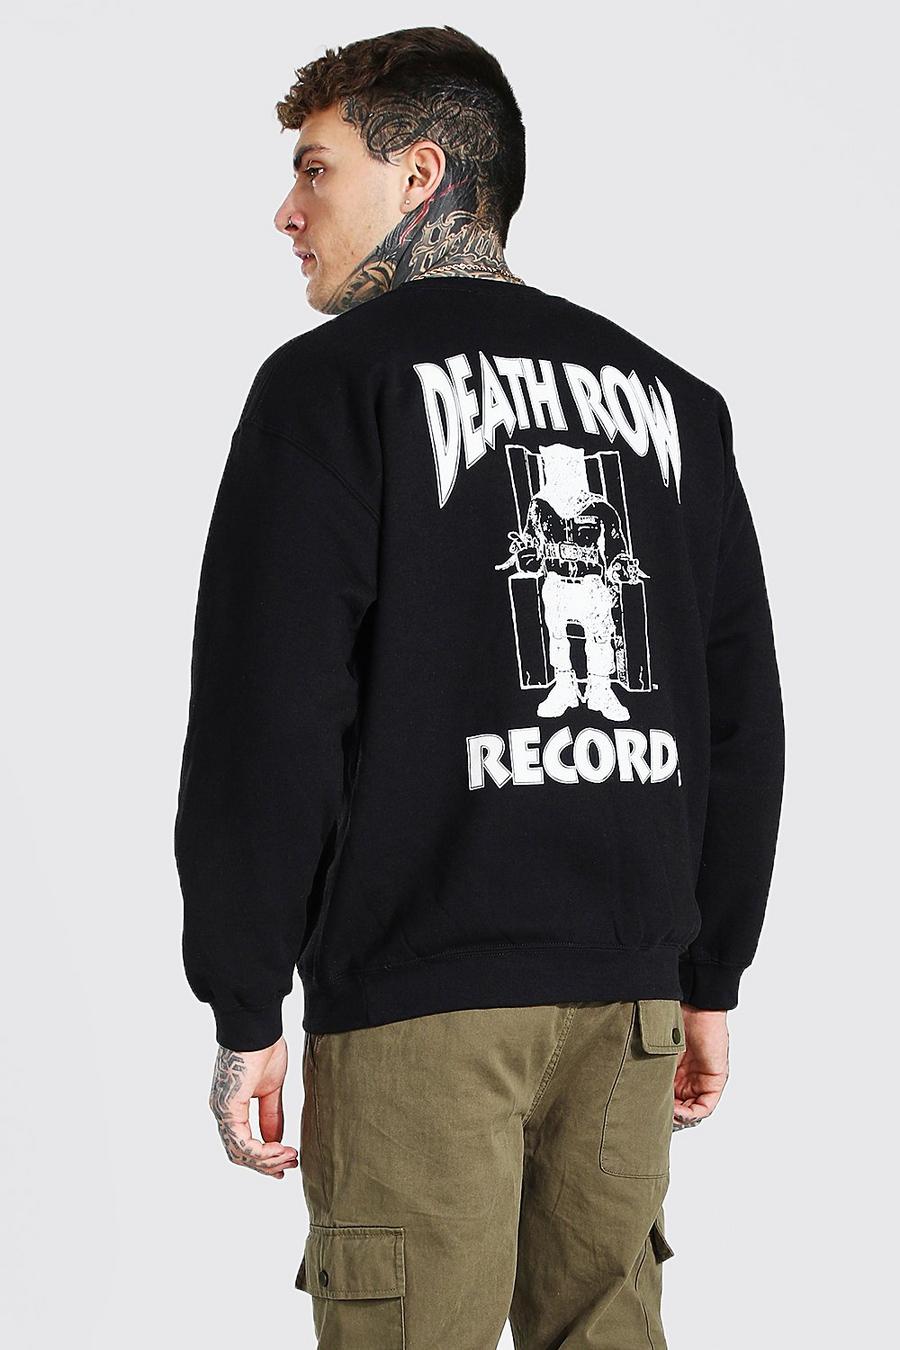 שחור סווטשרט עם הדפס אחורי במיתוג Death Row Records image number 1